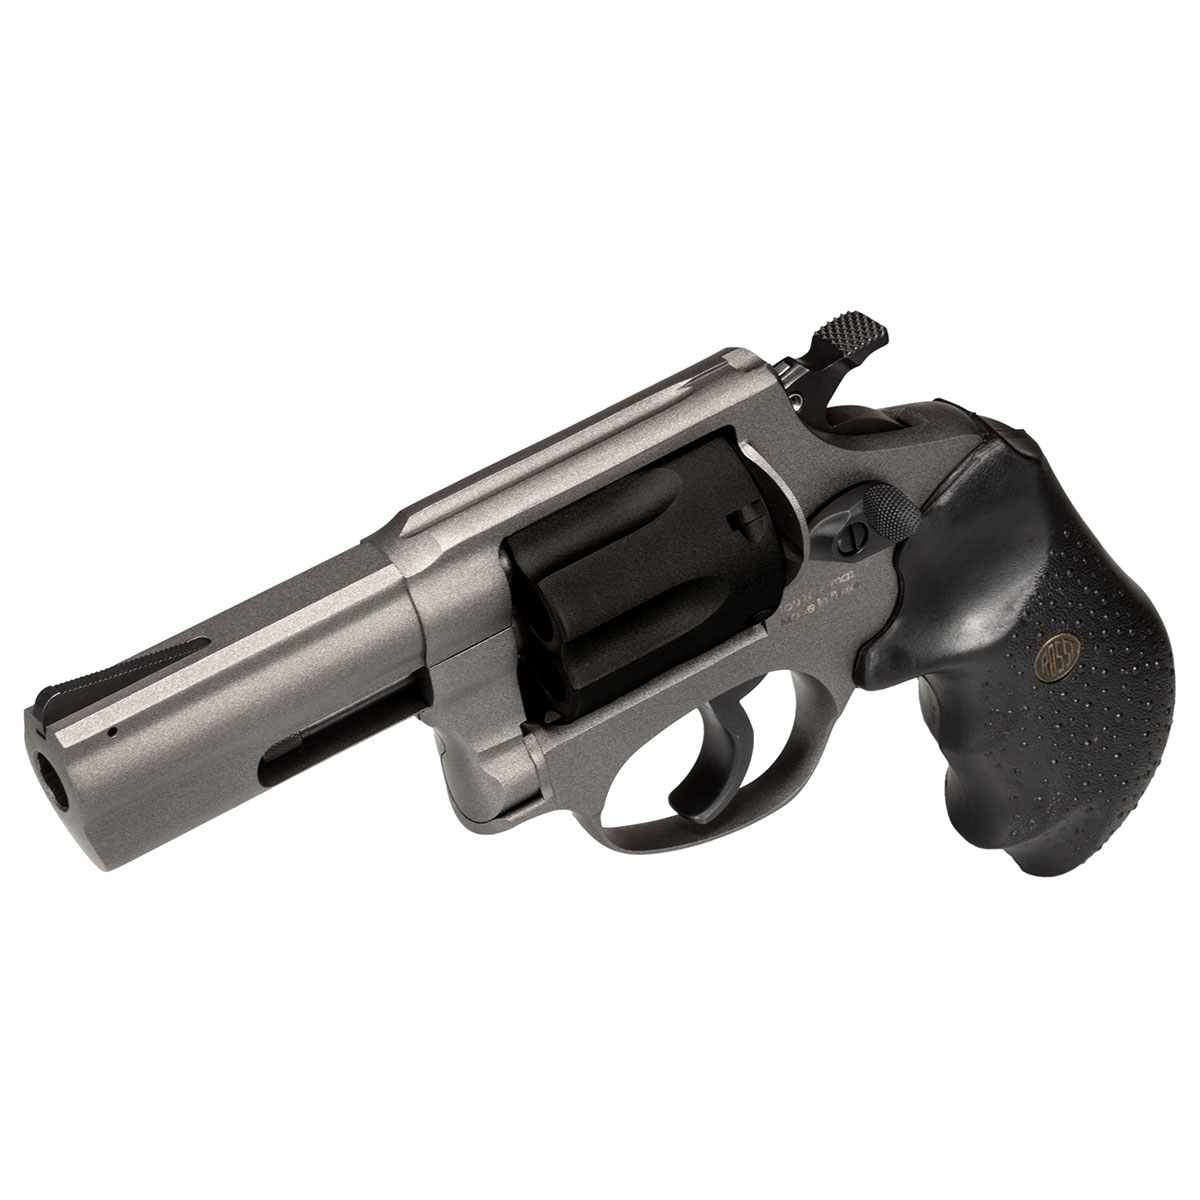 Rossi Rp63 357 Magnum Revolver 5462